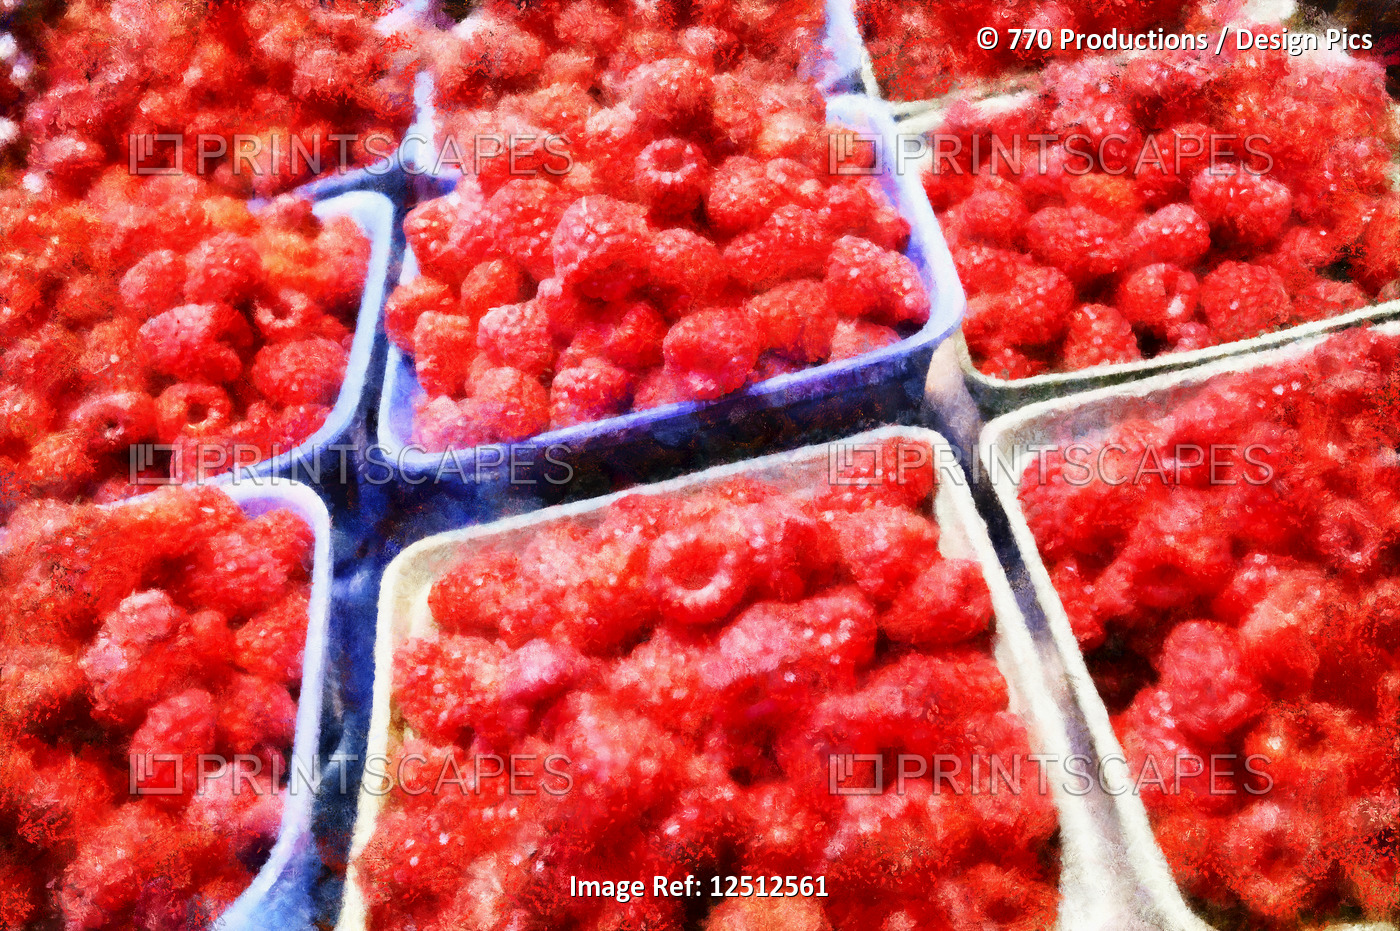 Digital painting of fresh raspberries in baskets